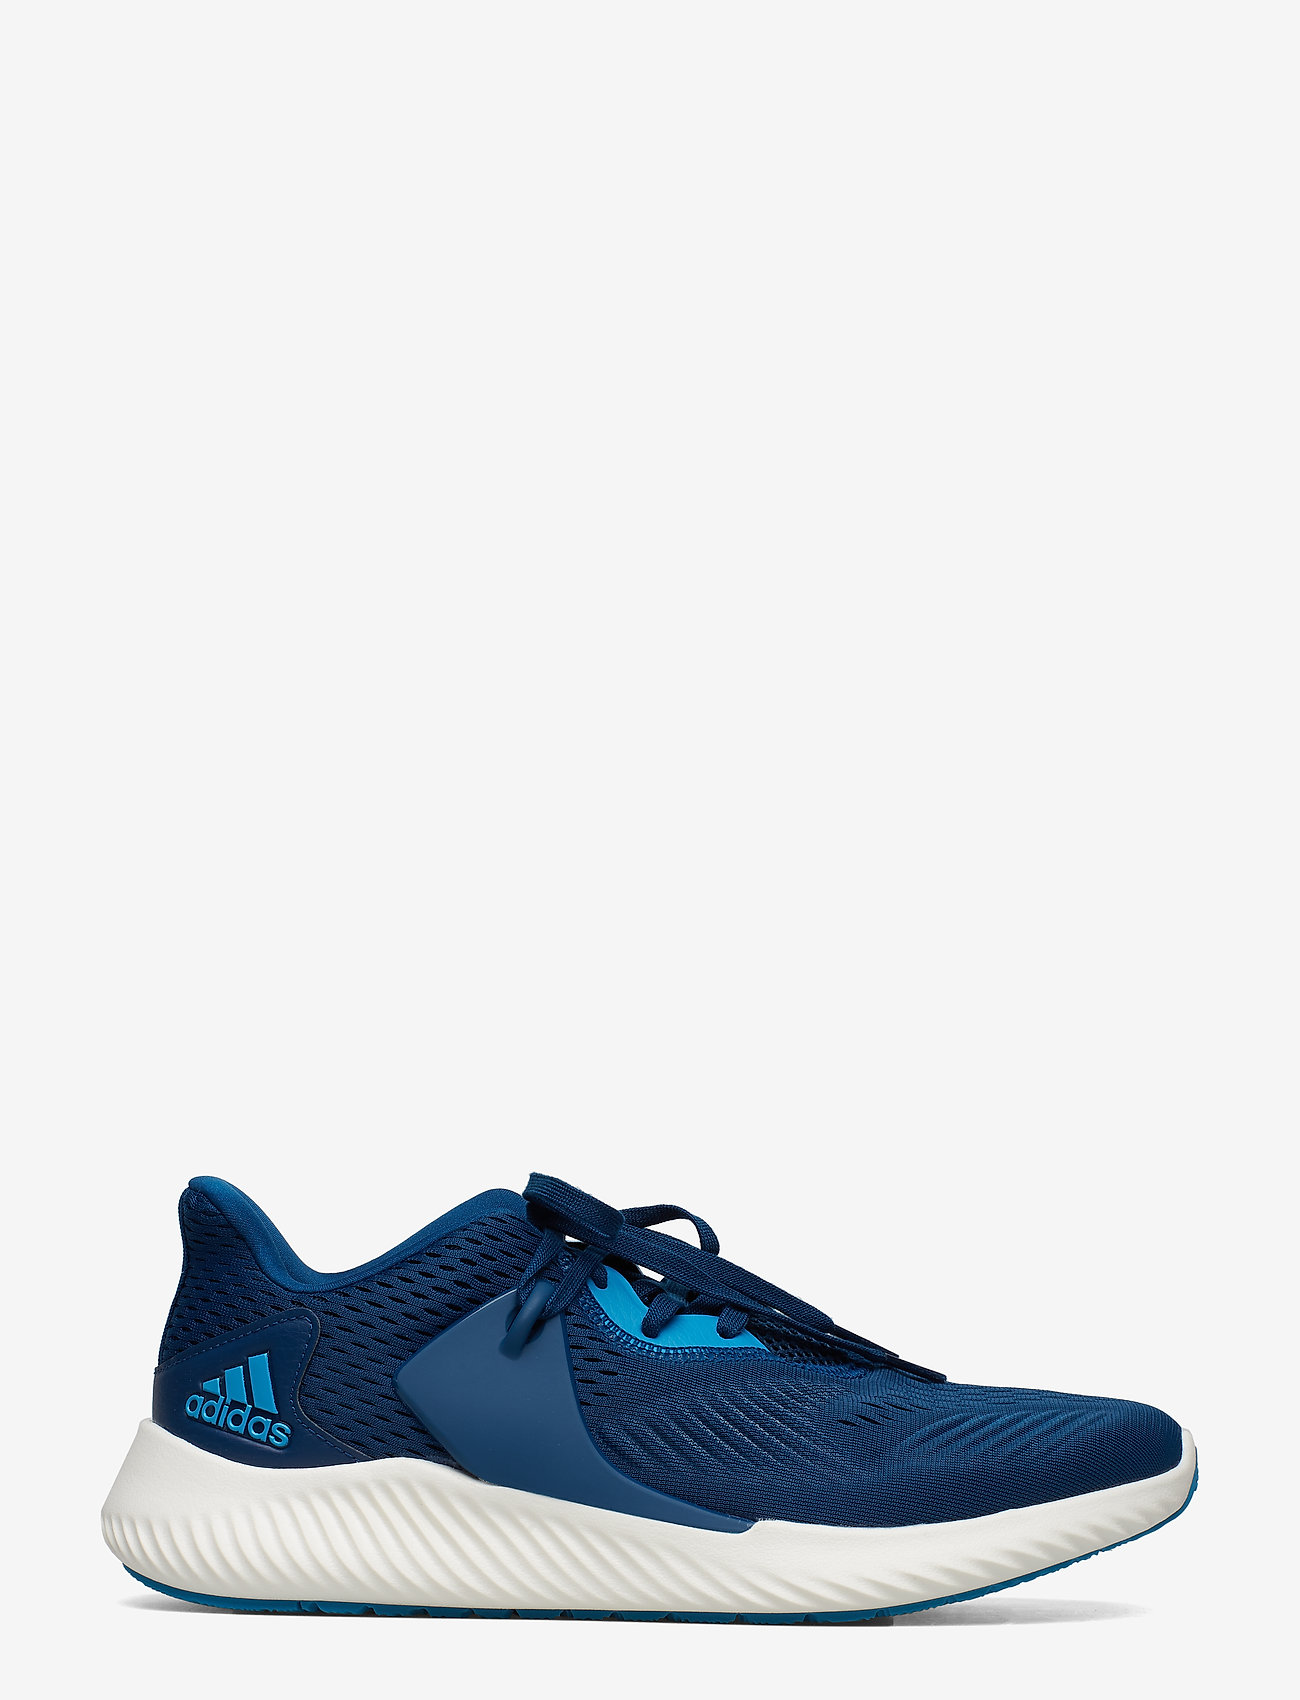 adidas alphabounce rc blue